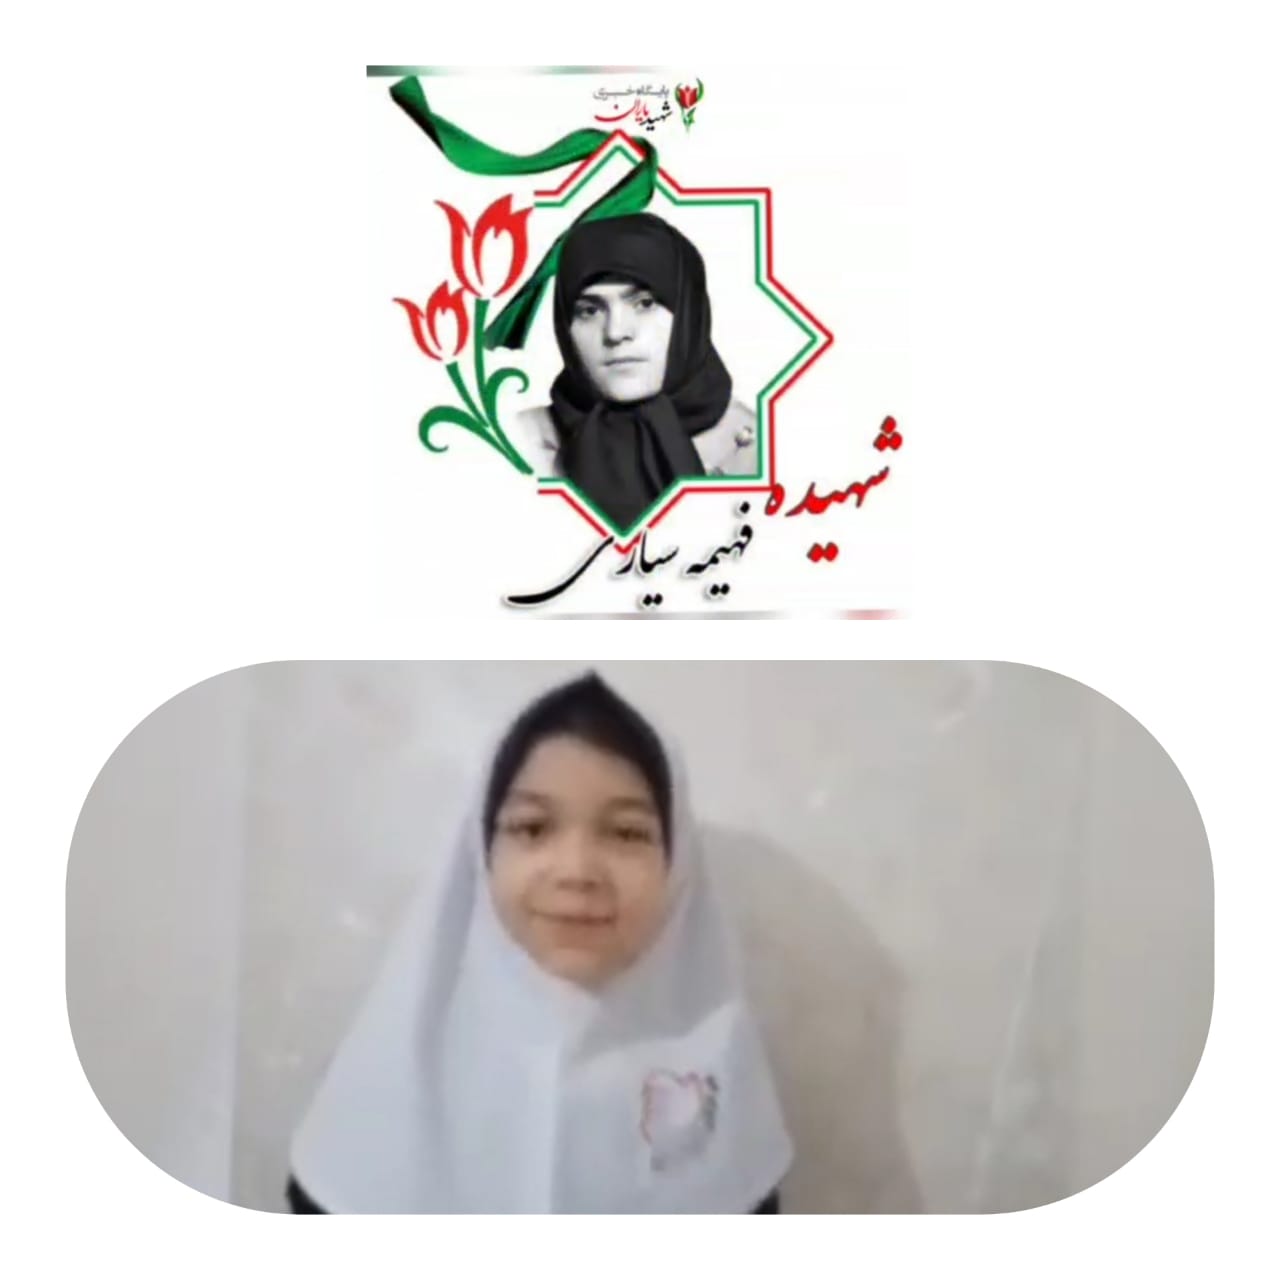 بازخوانی بخشی از وصیت نامه شهیده فهیمه سیاری  توسط خبرنگار کودک و نوجوان پایگاه خبری شهید یاران